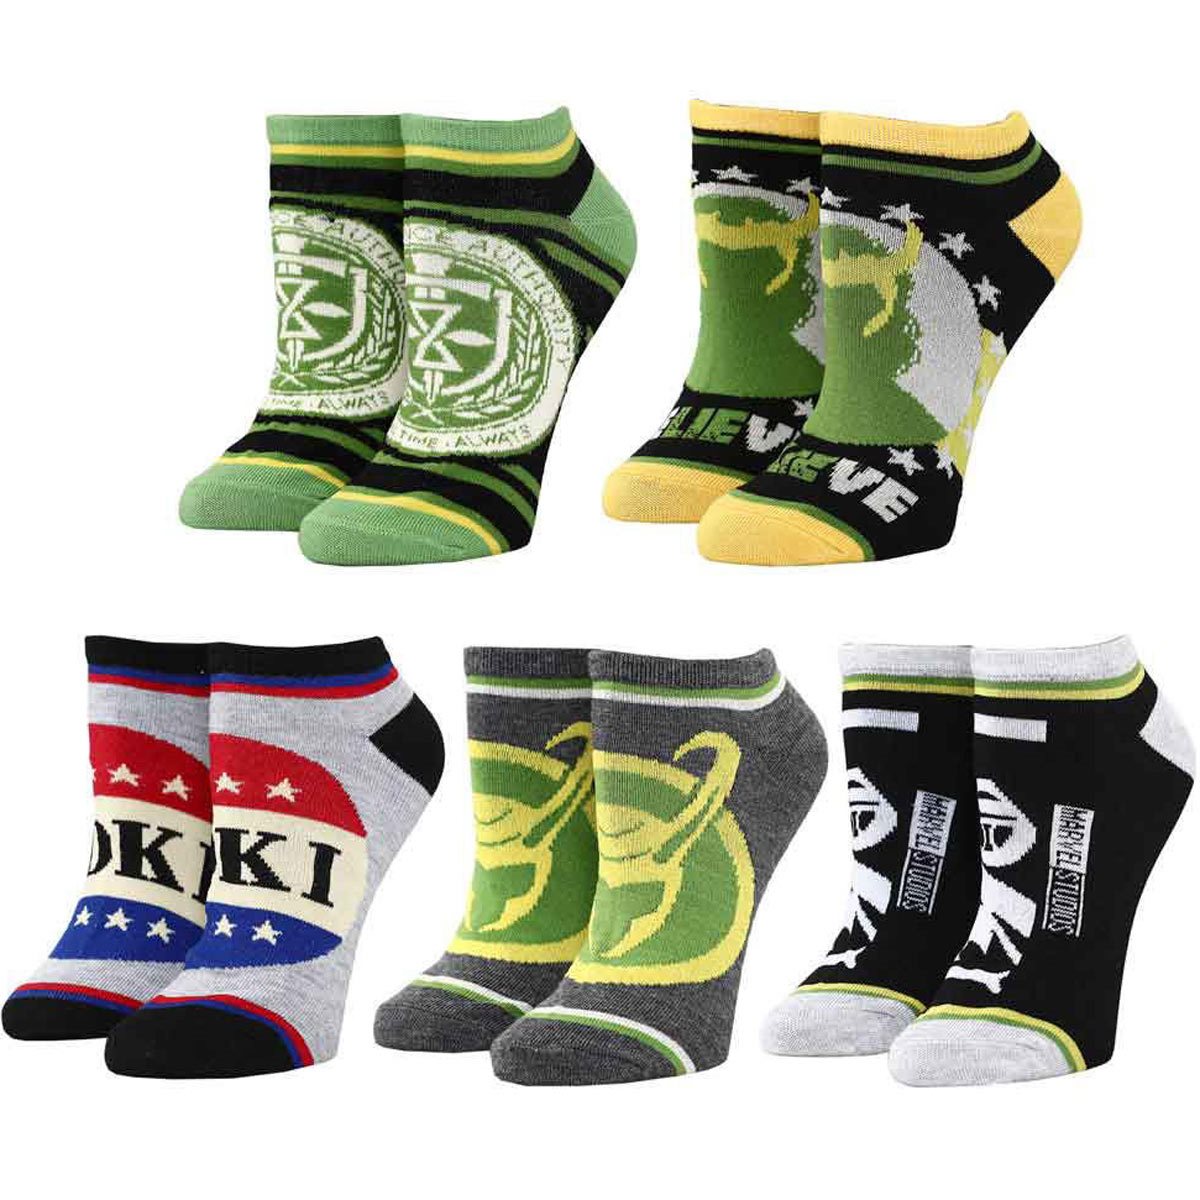 Loki - Campaign Art Socks 5-Pack